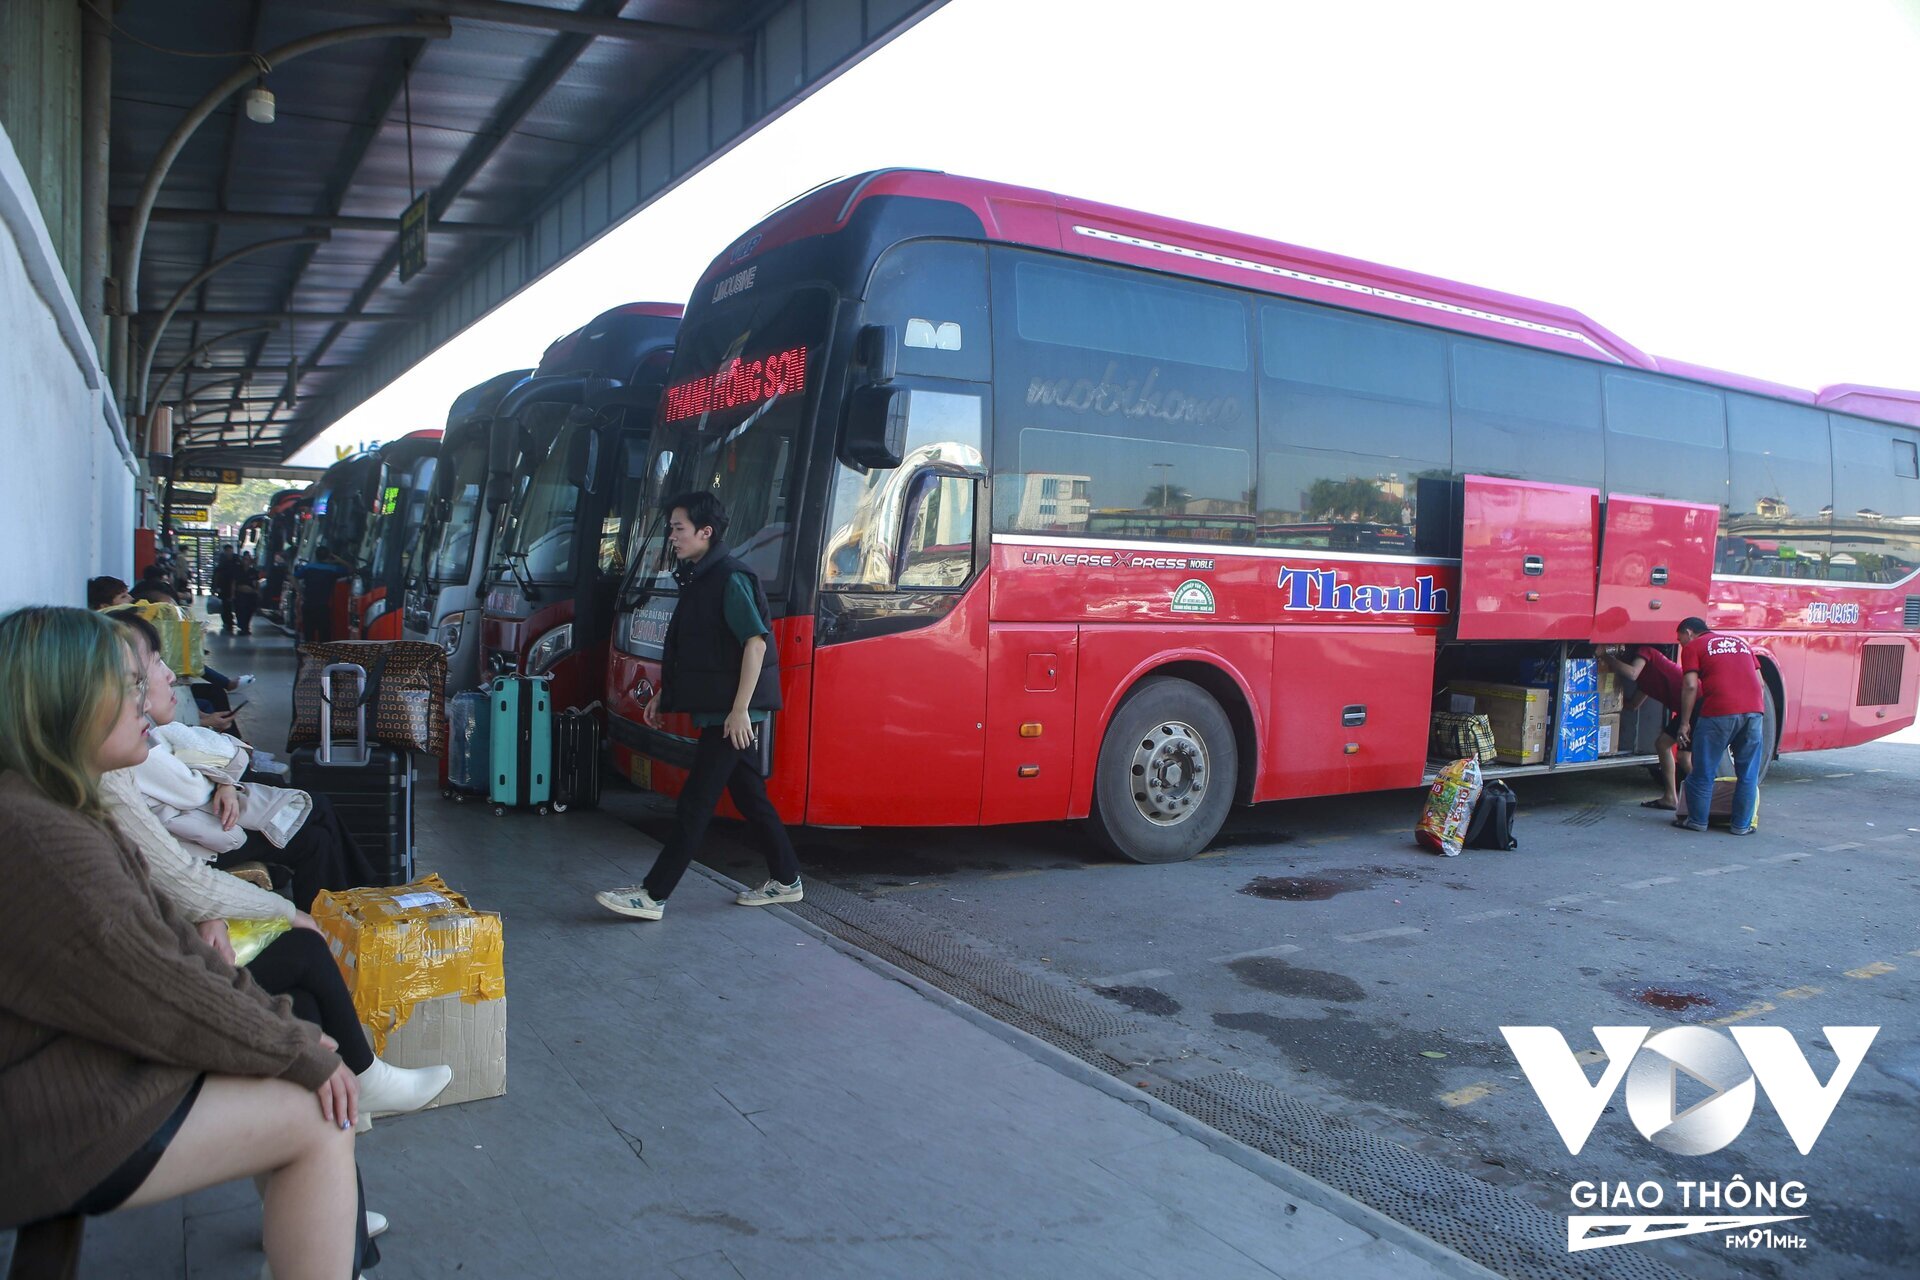 Theo chia sẻ của lái xe khách xe Thanh Hồng Sơn (chuyên tuyến Hà Nội – Nghệ An) cho hay, năm nay lượng khách chưa đông như các năm trước đó. Đến thời điểm gần xuất bến nhưng có xe vẫn chưa đủ khách, chúng tôi hi vọng những ngày sát Tết khách sẽ tăng lên.